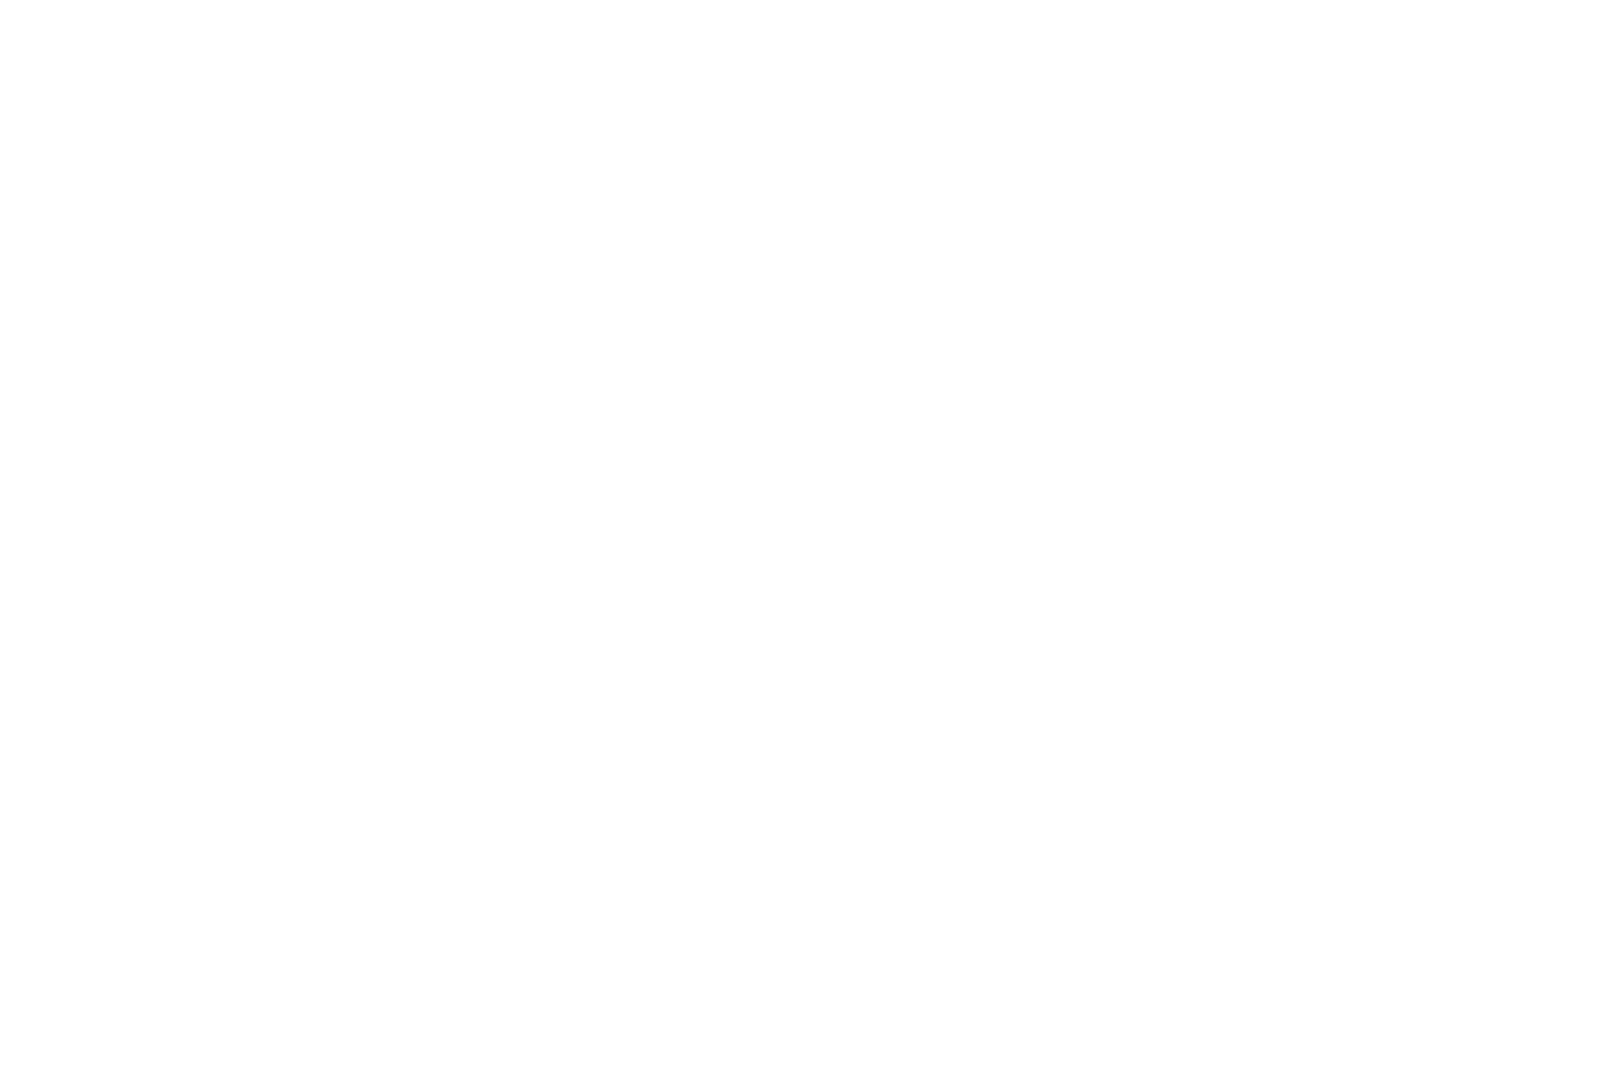 Ненецкая молодая женщина улыбается и несёт дрова в чум. Сейчас будет тепло. Солнечный зимний день. Стойбище ненцев оленеводов на Ямале в тундре Полярного Урала. Машкова Елена, Elena Mashkova фотограф